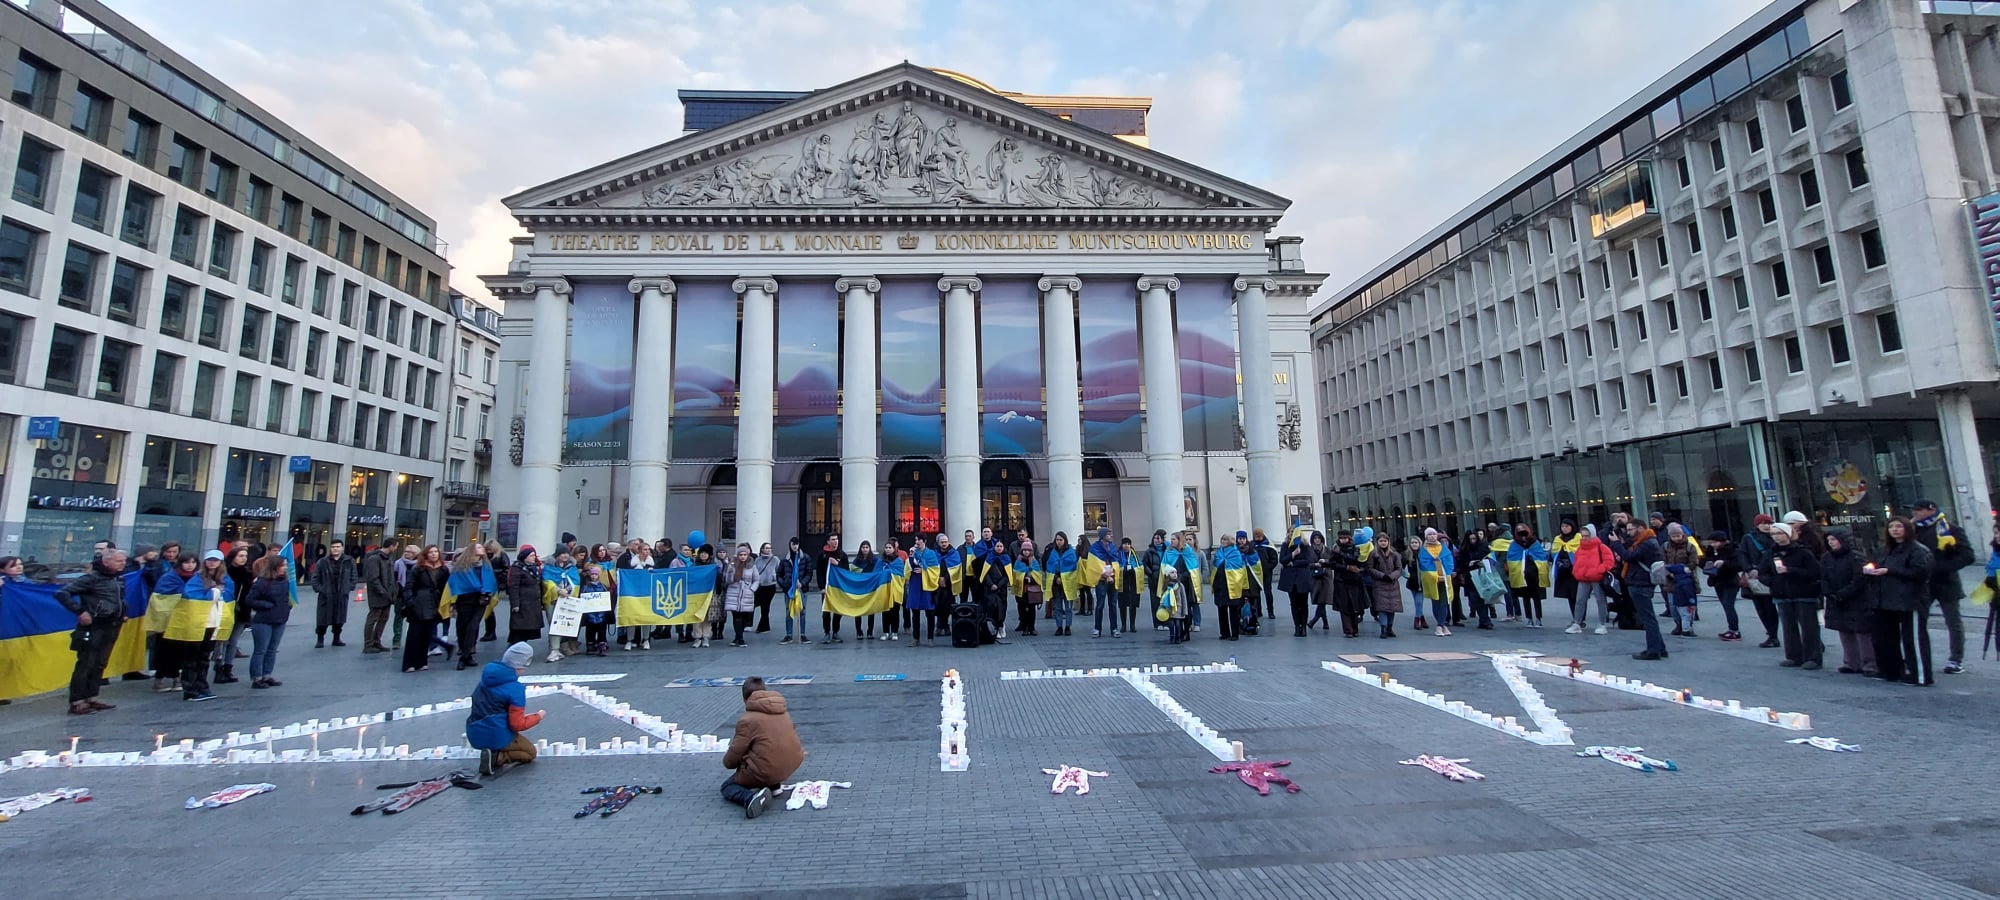 Appel de Promote Ukraine concernant la “saison russe” à l’opéra de Bruxelles La Monnaie